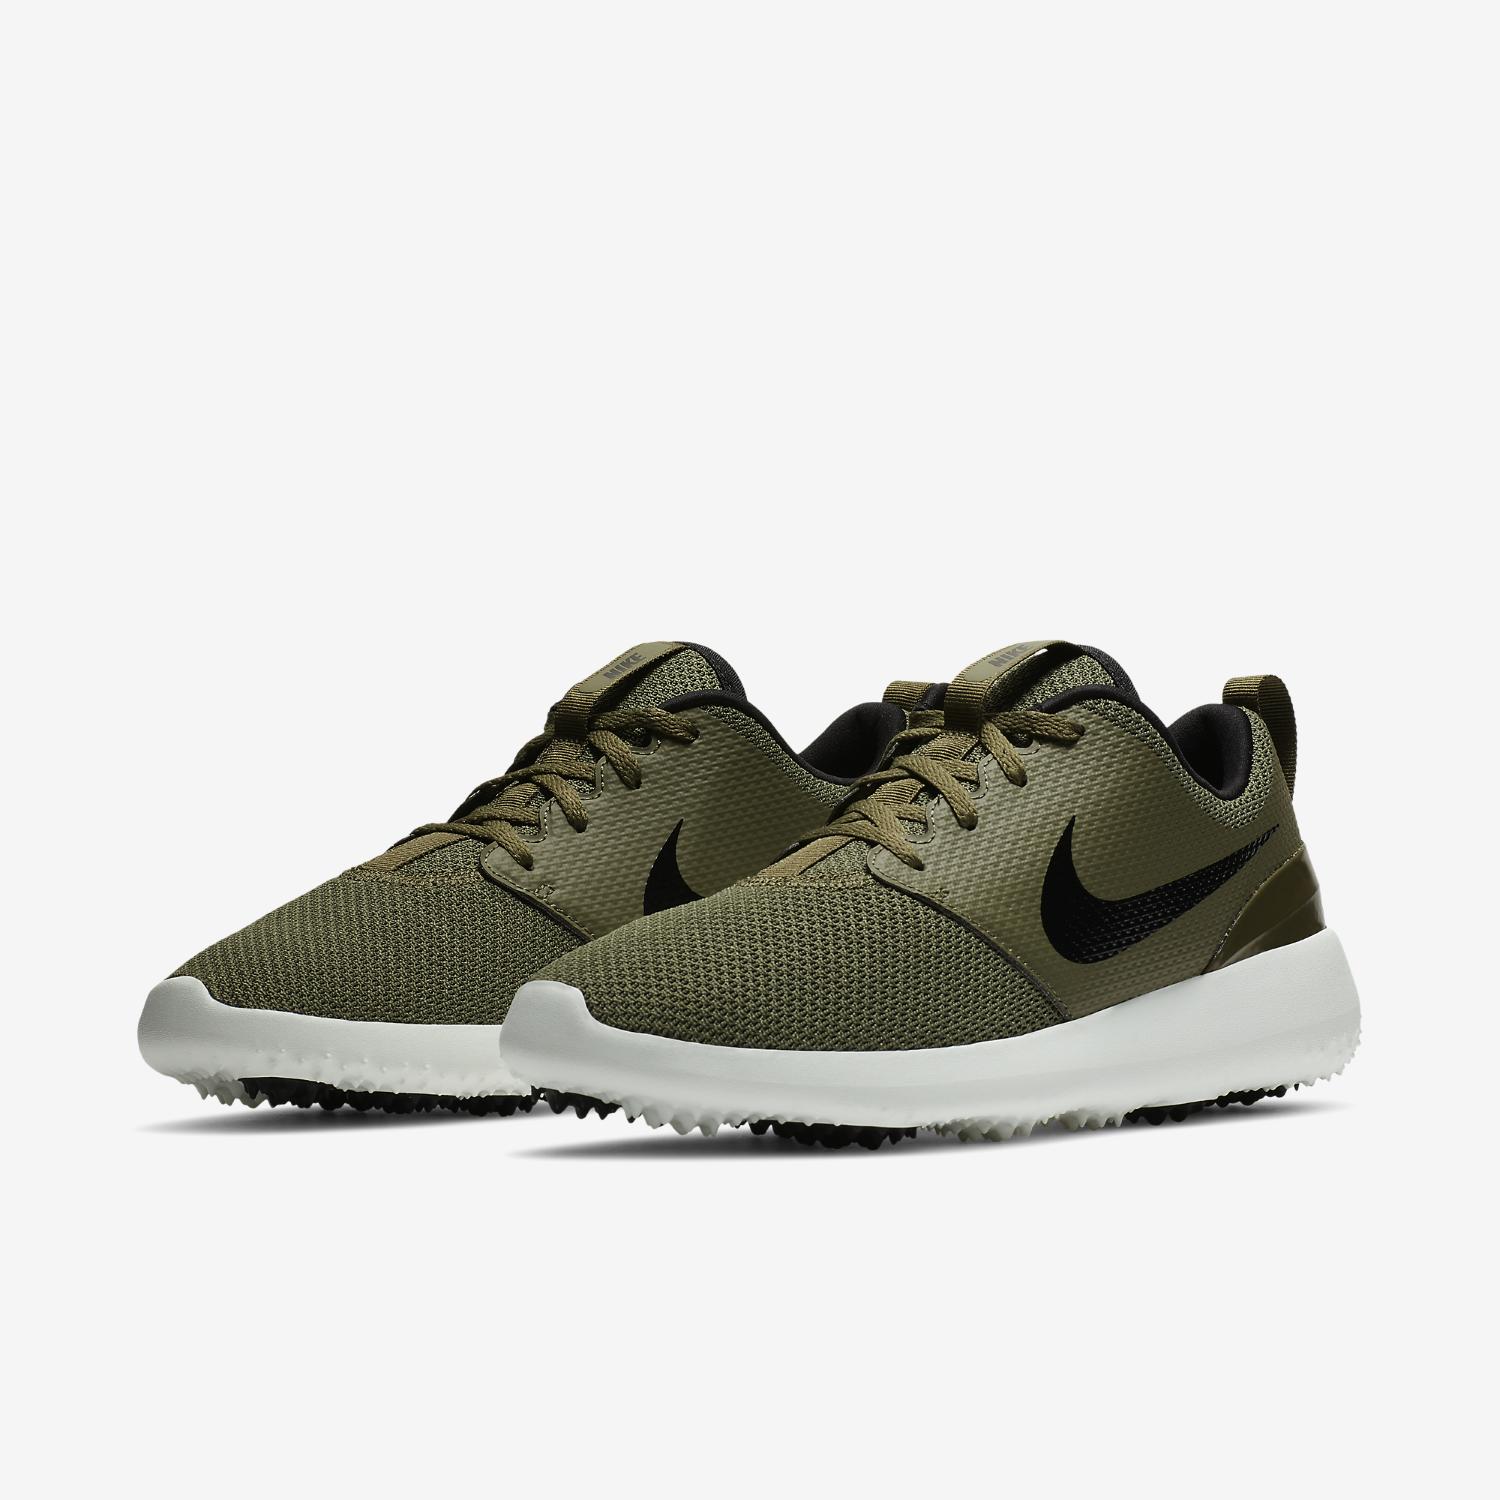 Nike Roshe G Golf Shoe in Green for Men - Lyst